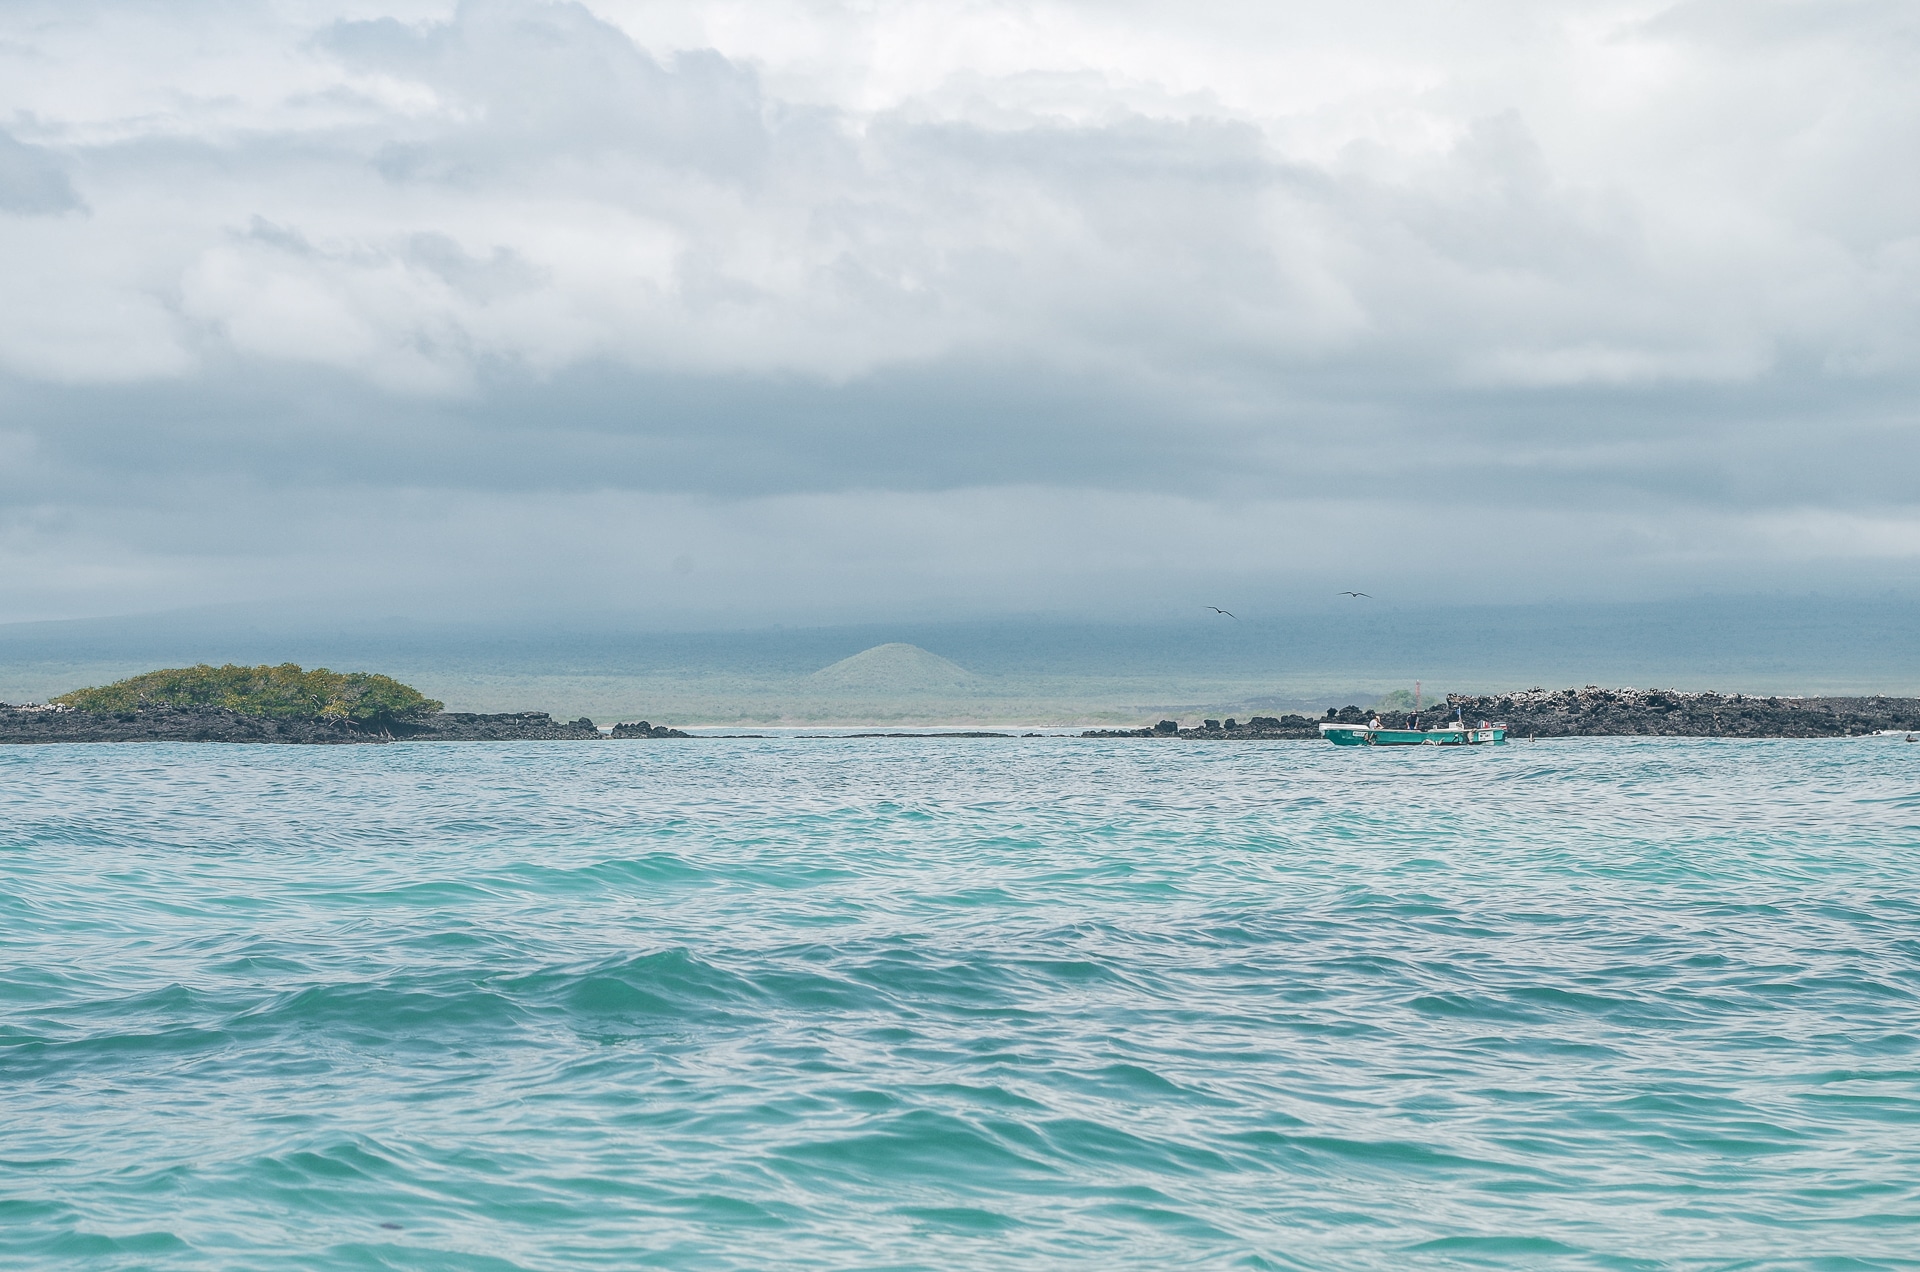 vue sur l'île d'Isabela aux Galapagos depuis l'océan Pacifique